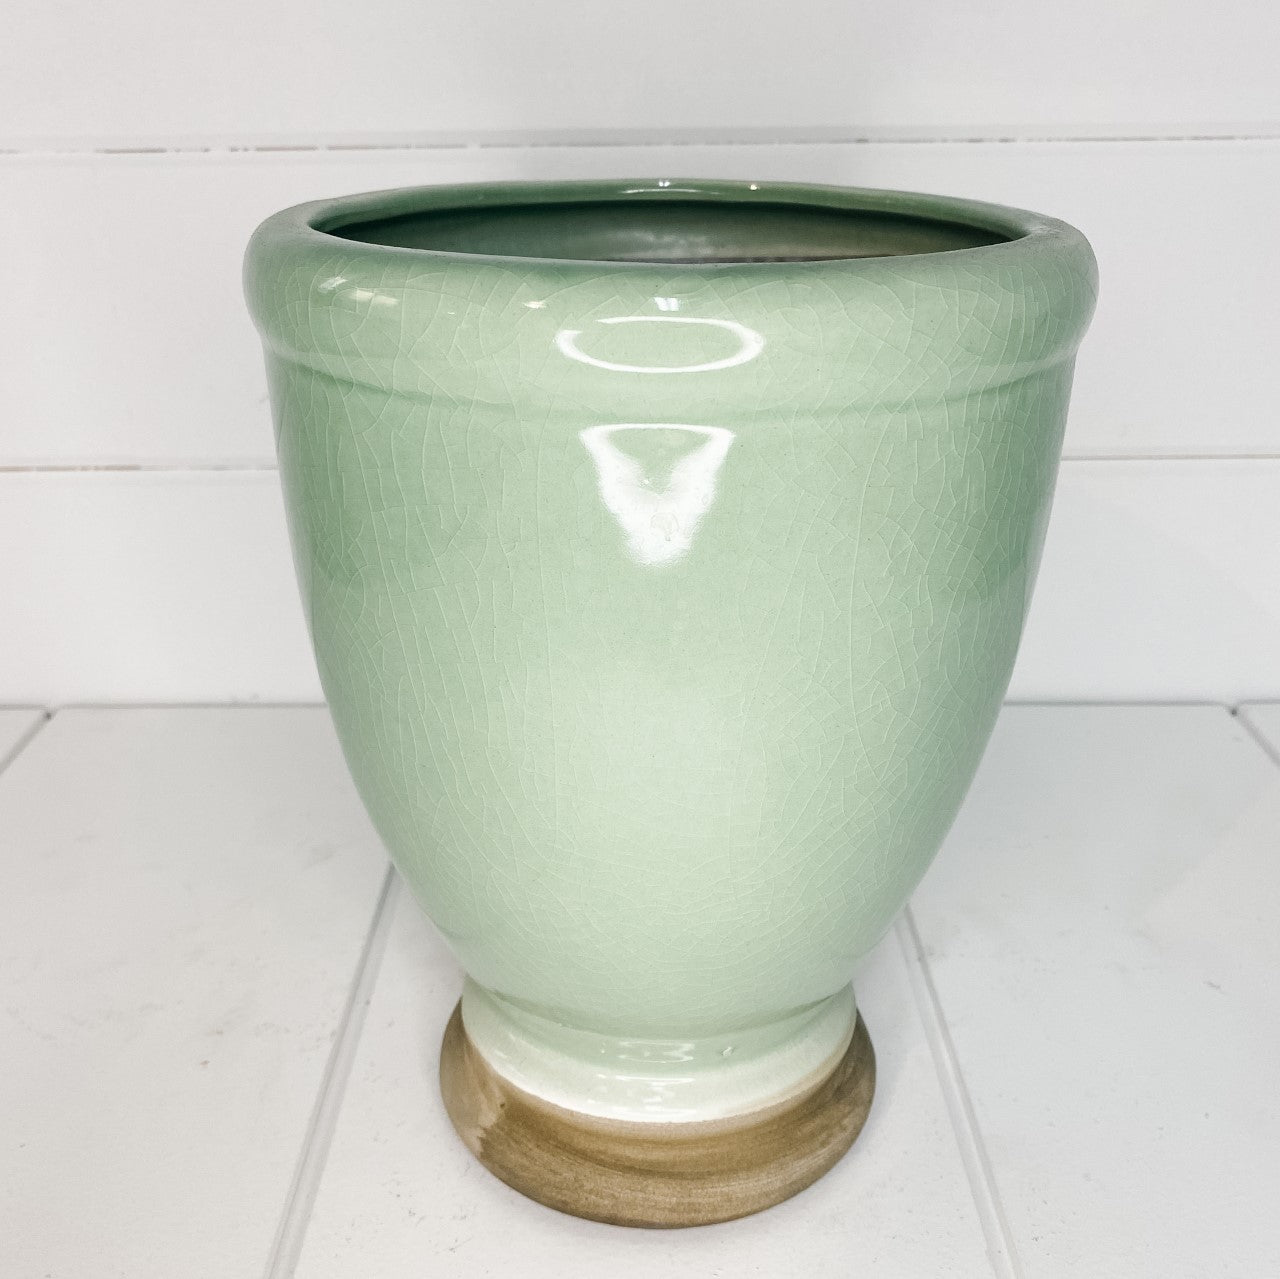 Glazed urn style vase/pot